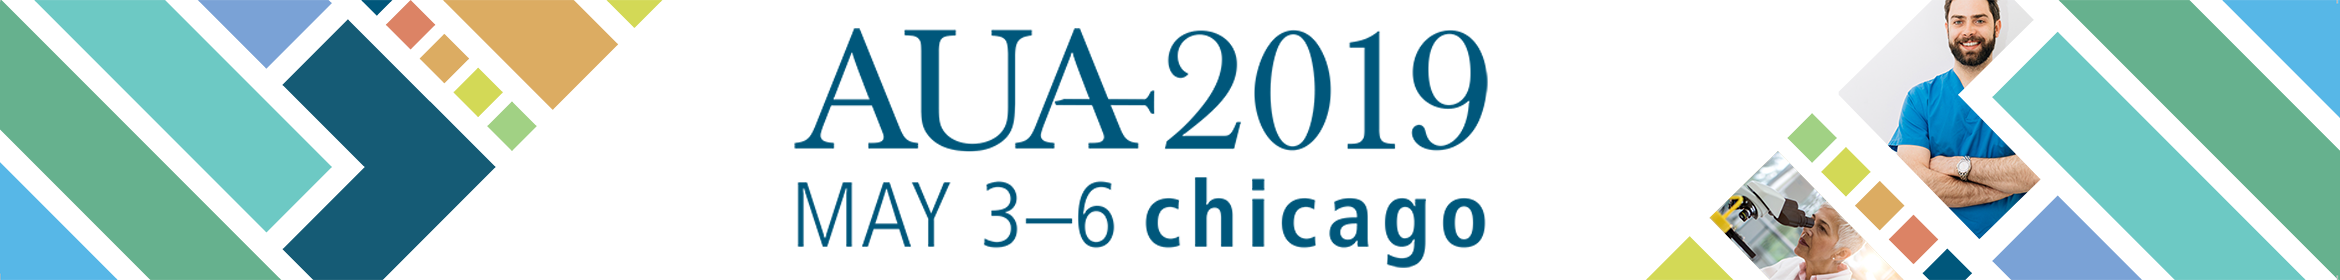 AUA 2019 Annual Meeting Main banner